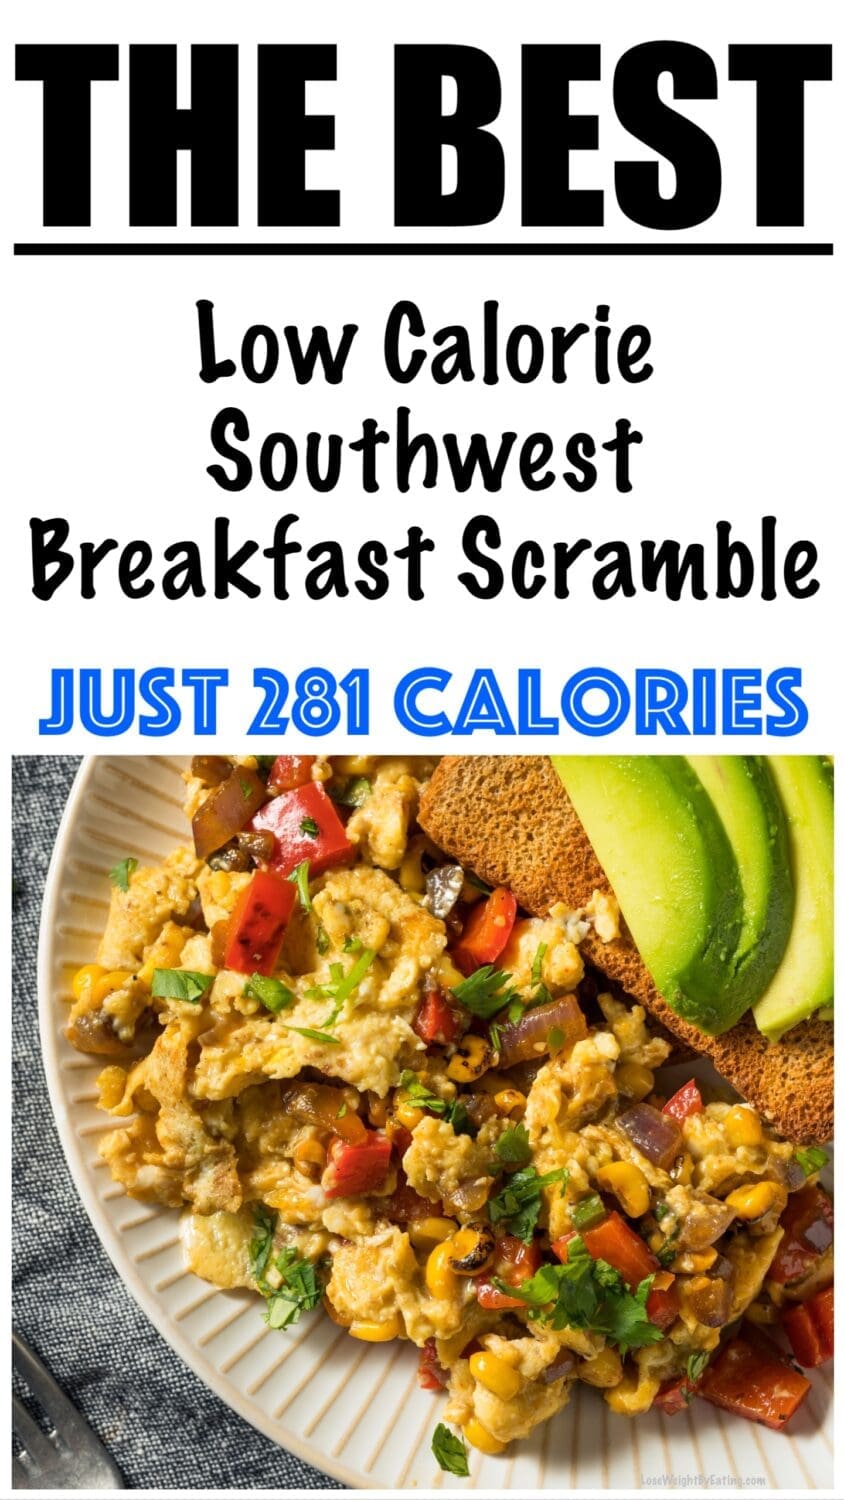 Low Calorie Southwest Breakfast Scramble